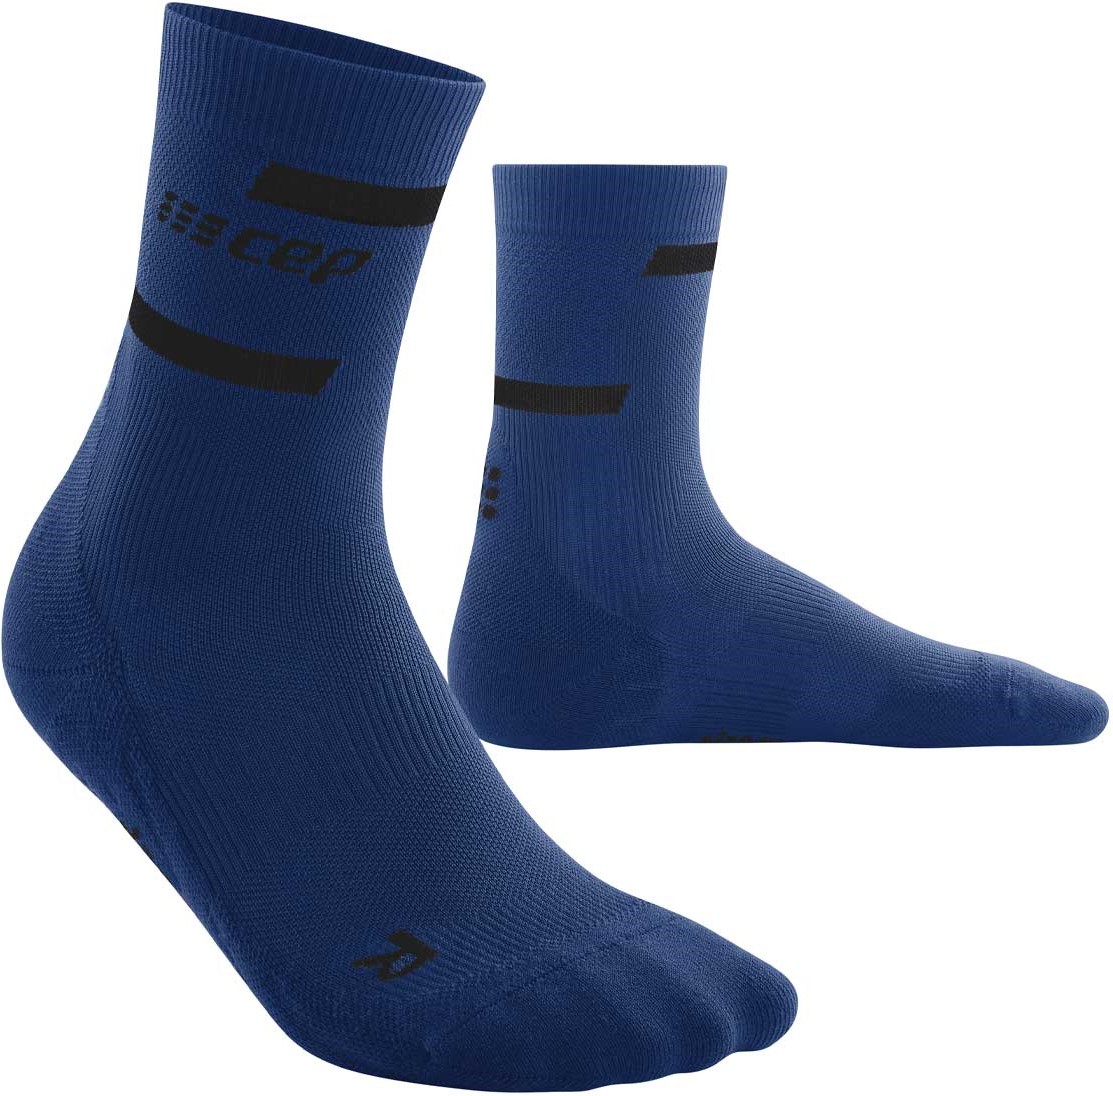 CEP dámské běžecké kompresní vysoké ponožky 4.0 - blue II (Vel. chodidla 34-37)